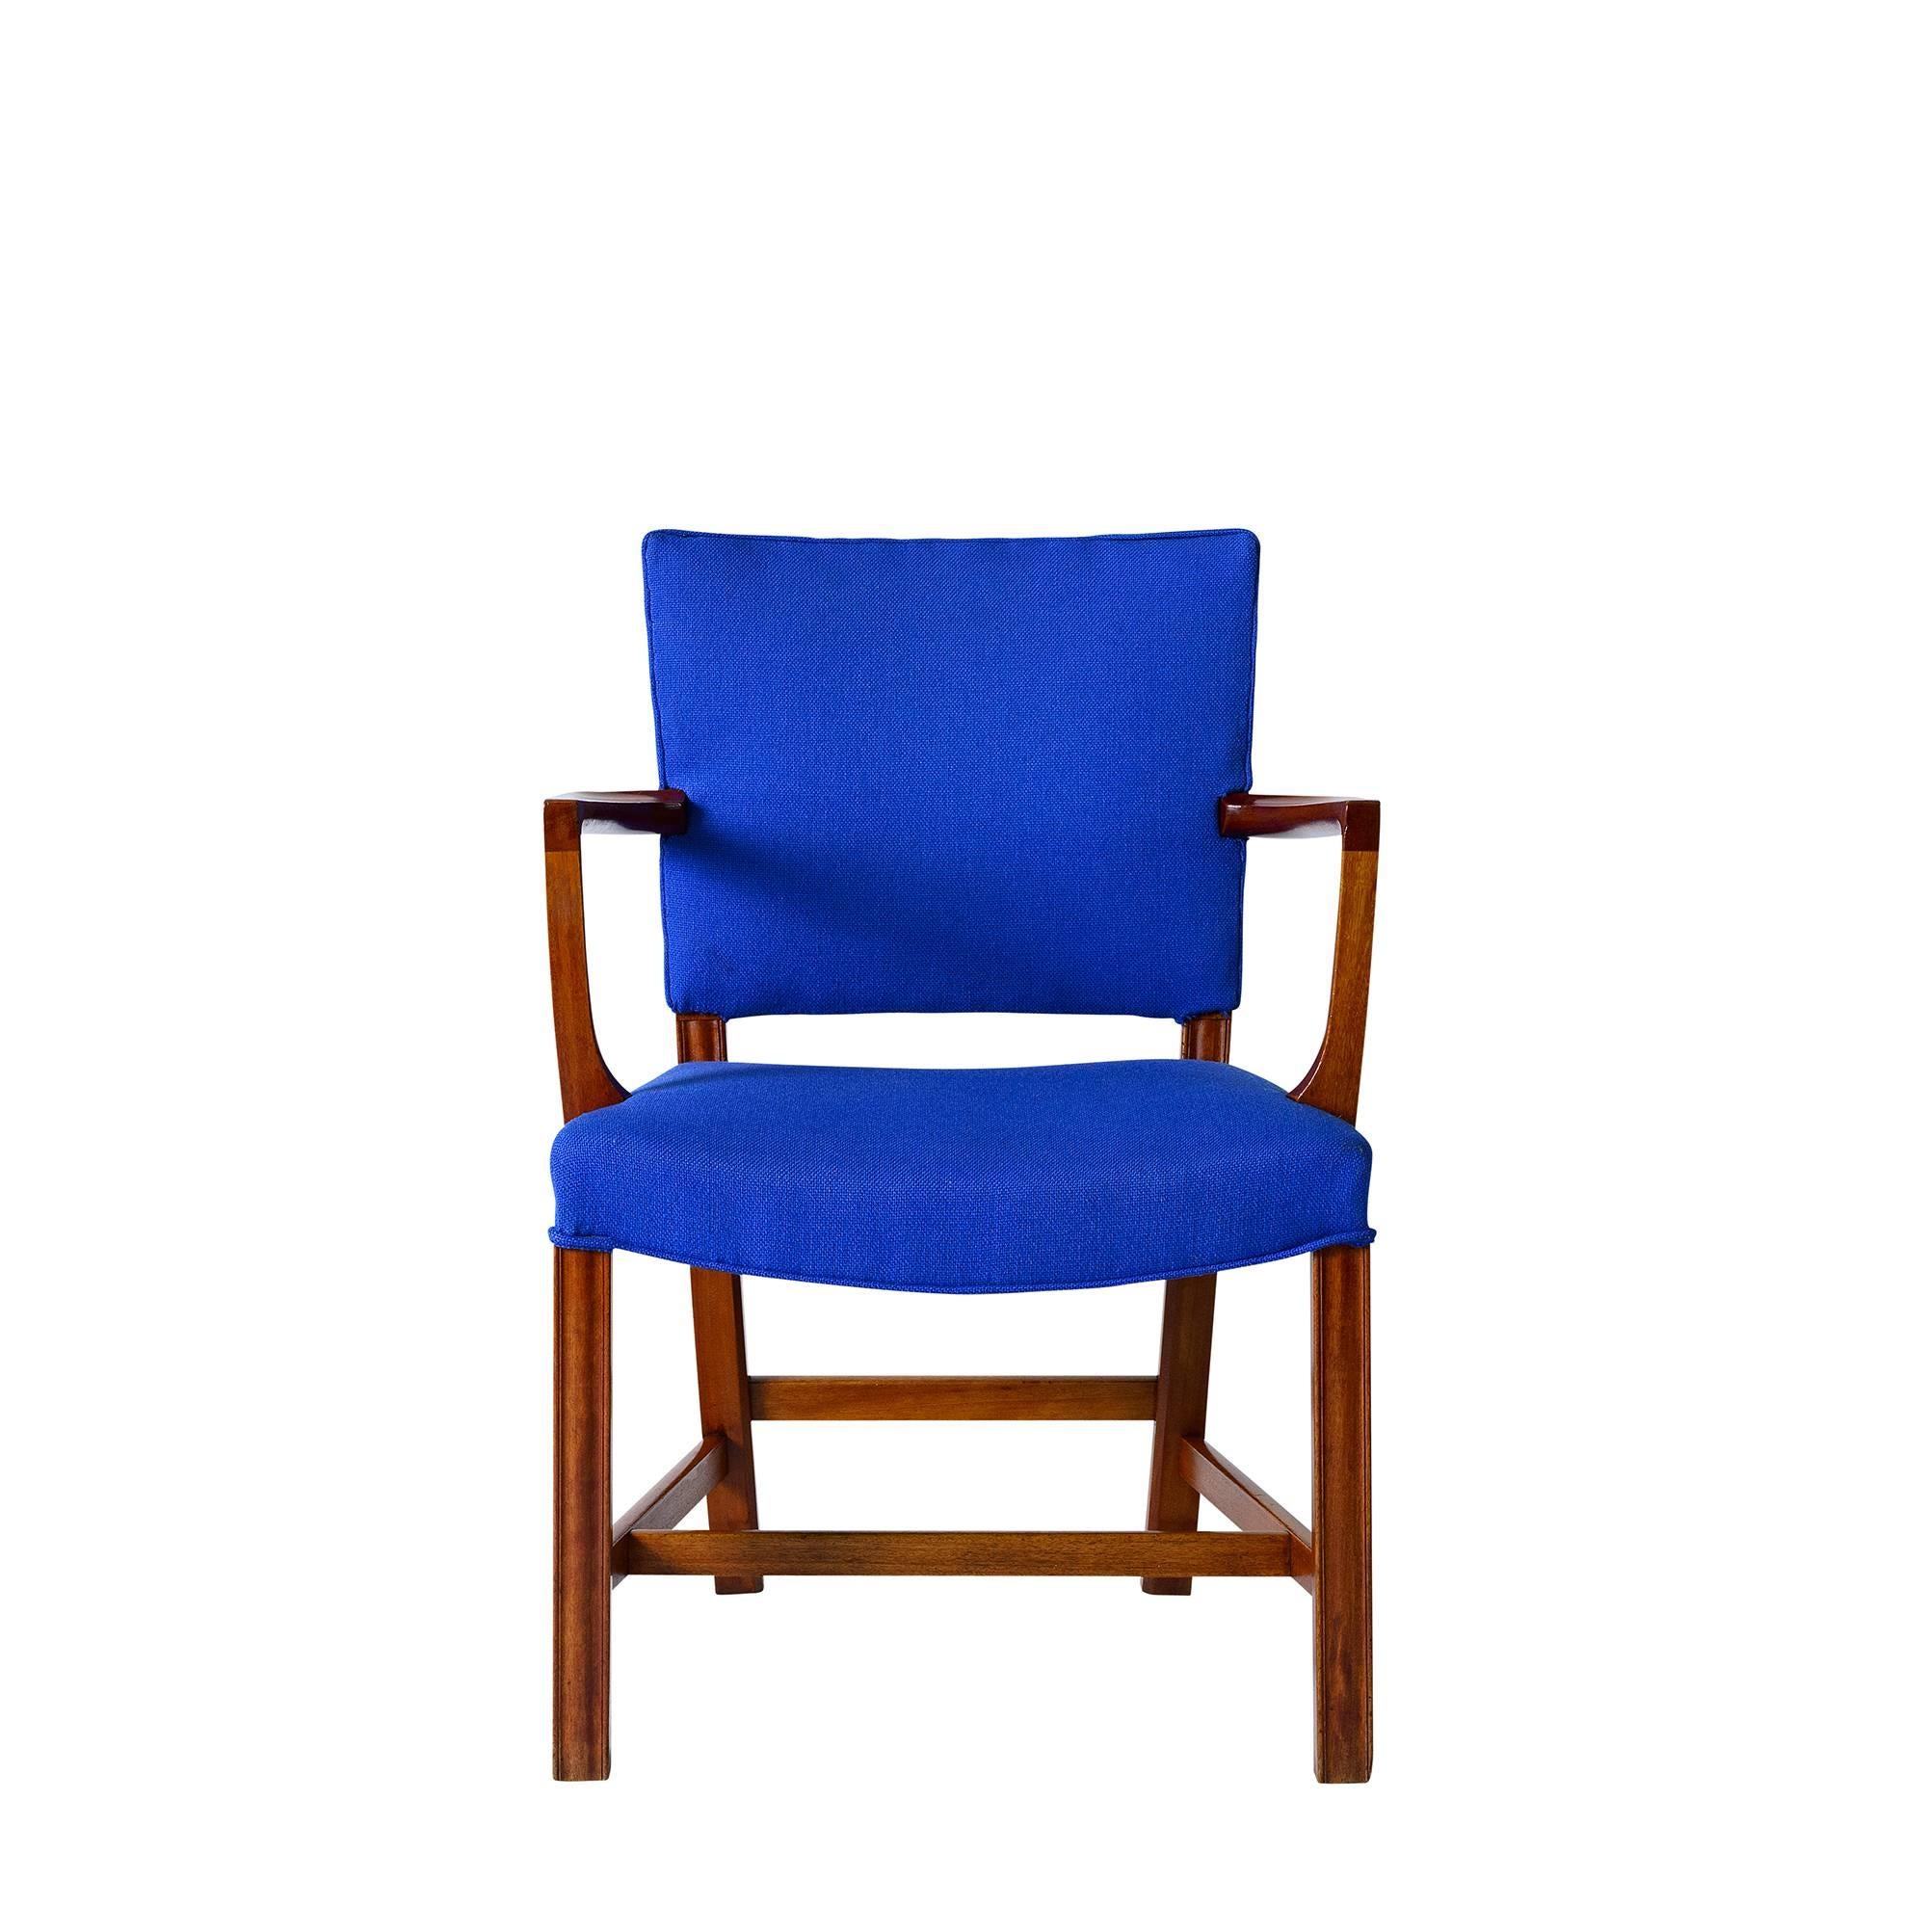 Satz Kaare Klint-Sessel, entworfen 1927 und hergestellt von Rud Rasmussen.